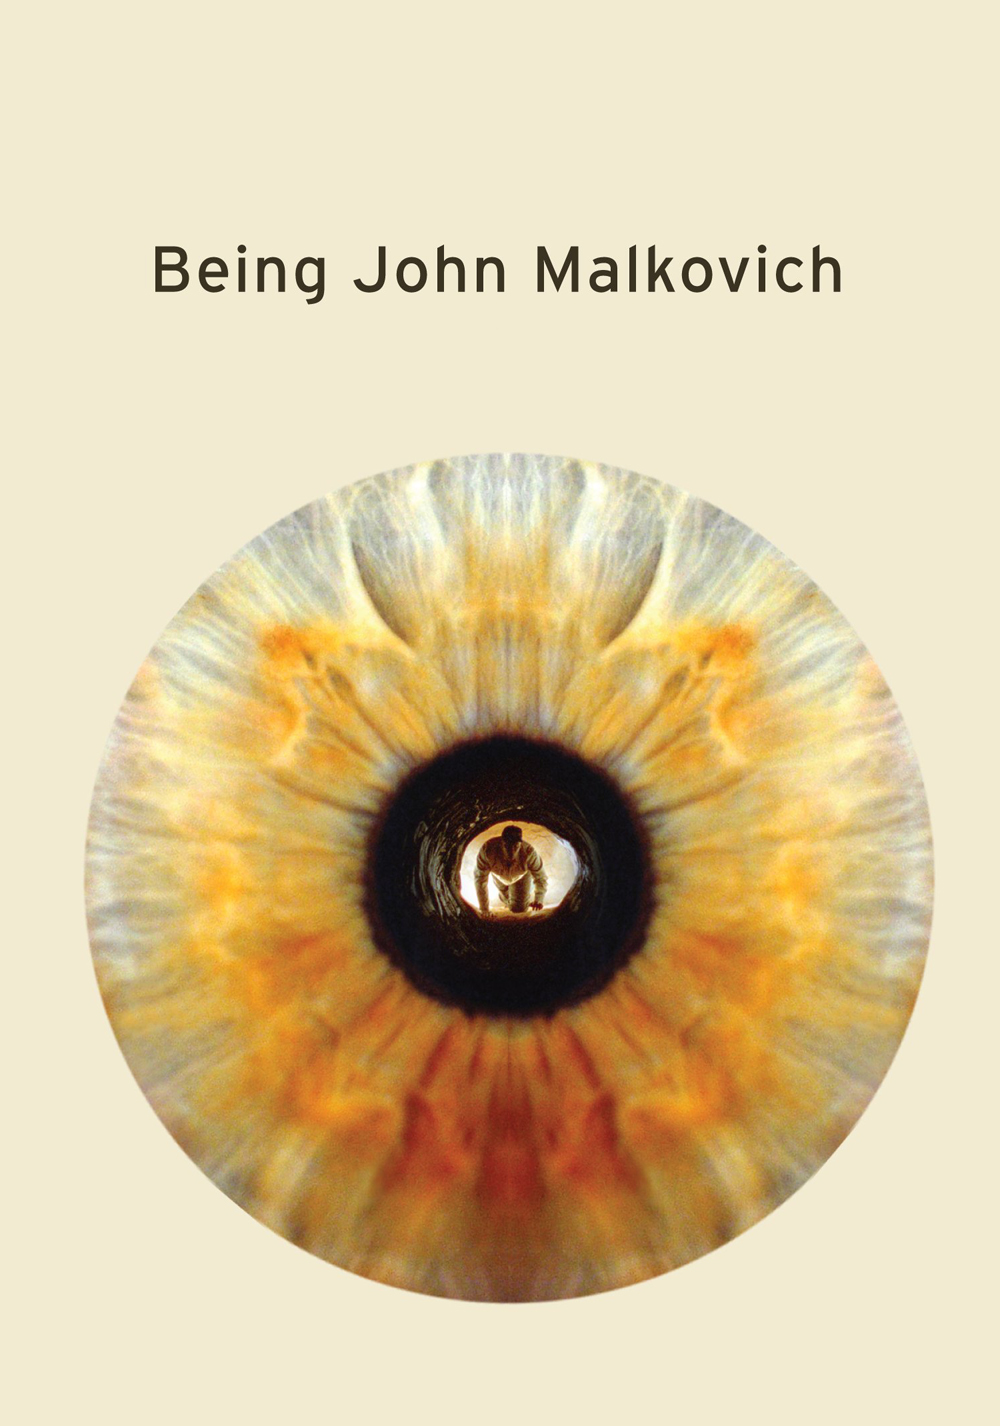 Being John Malkovich Art